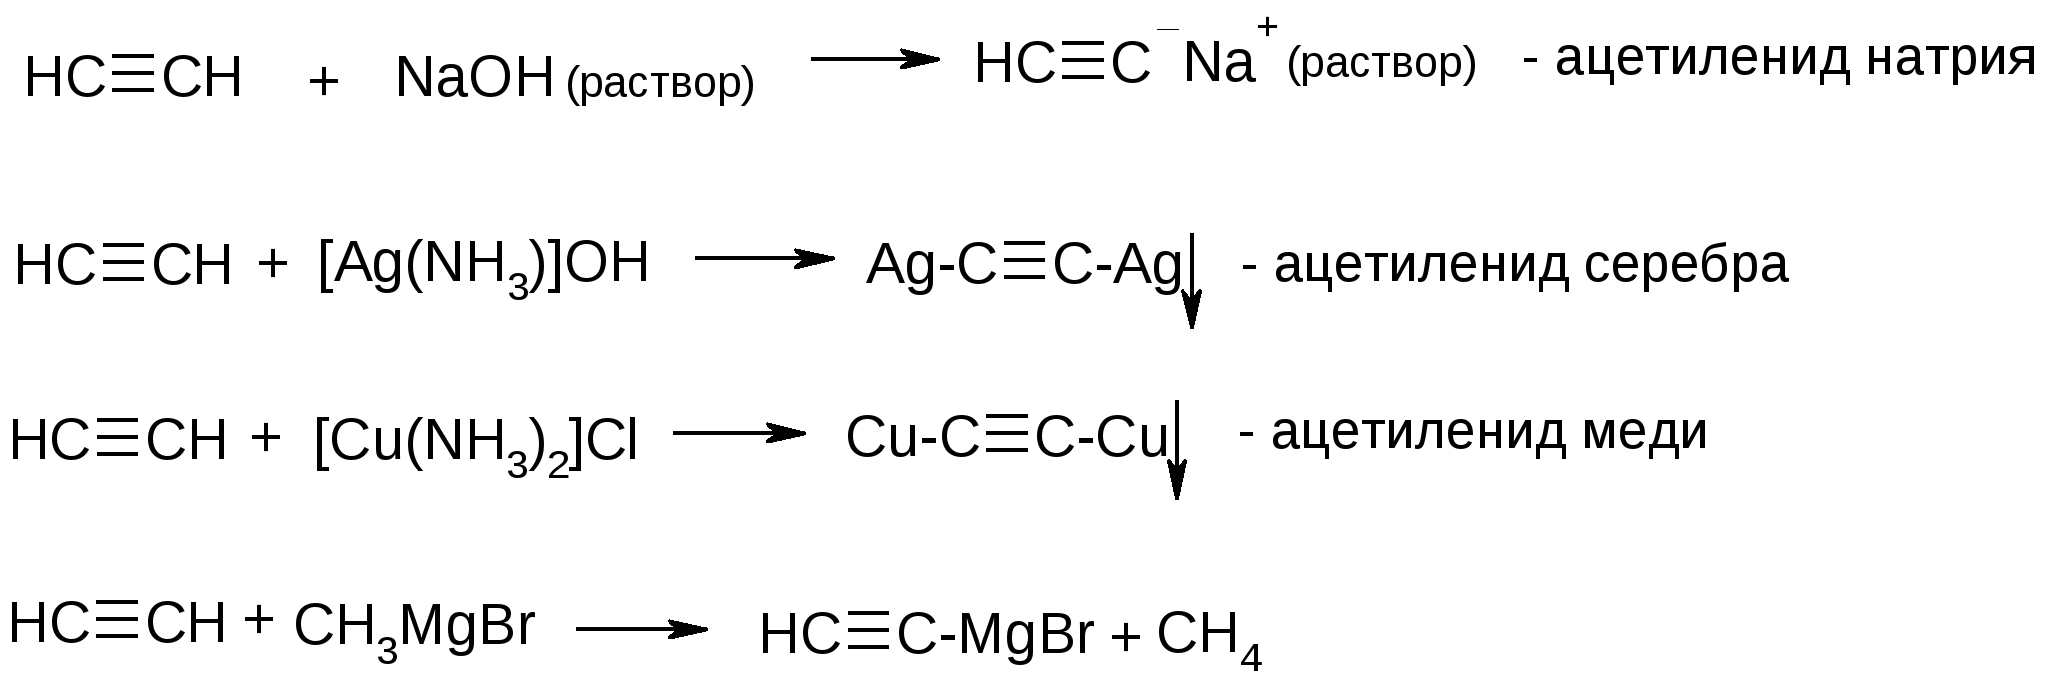 Ацетилен и натрий реакция. Ацетиленид серебра получение реакция. Получение ацетиленида натрия реакция. Ацетилен плюс гидроксид натрия. Ацетиленид натрия получение.